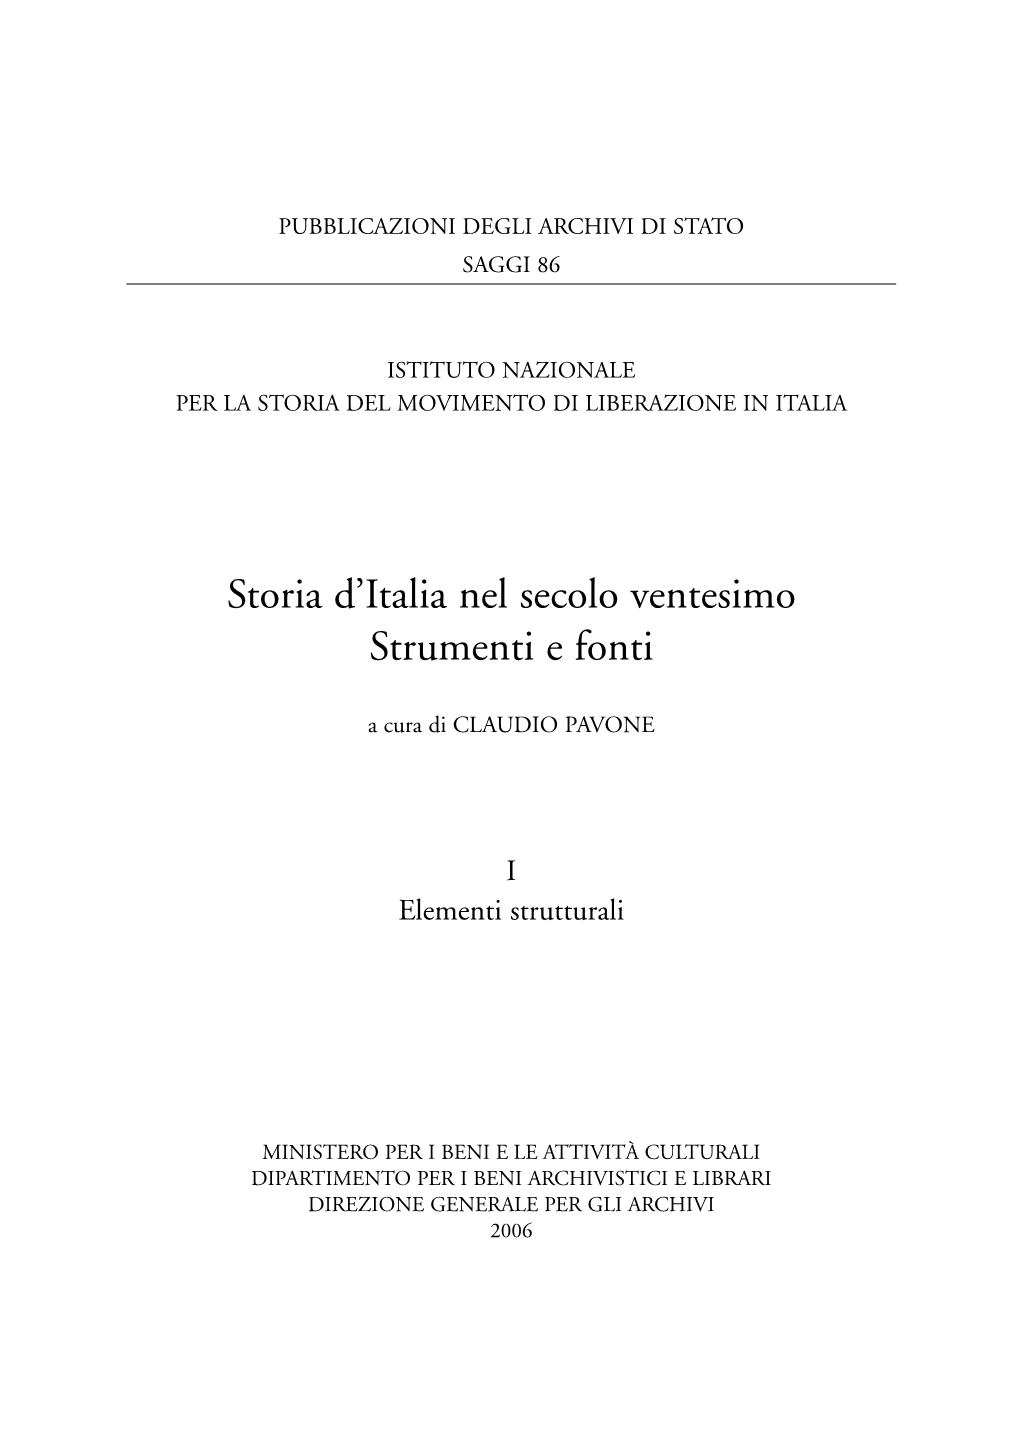 Storia D'italia Nel Secolo Ventesimo. Strumenti E Fonti . I Elementi Strutturali